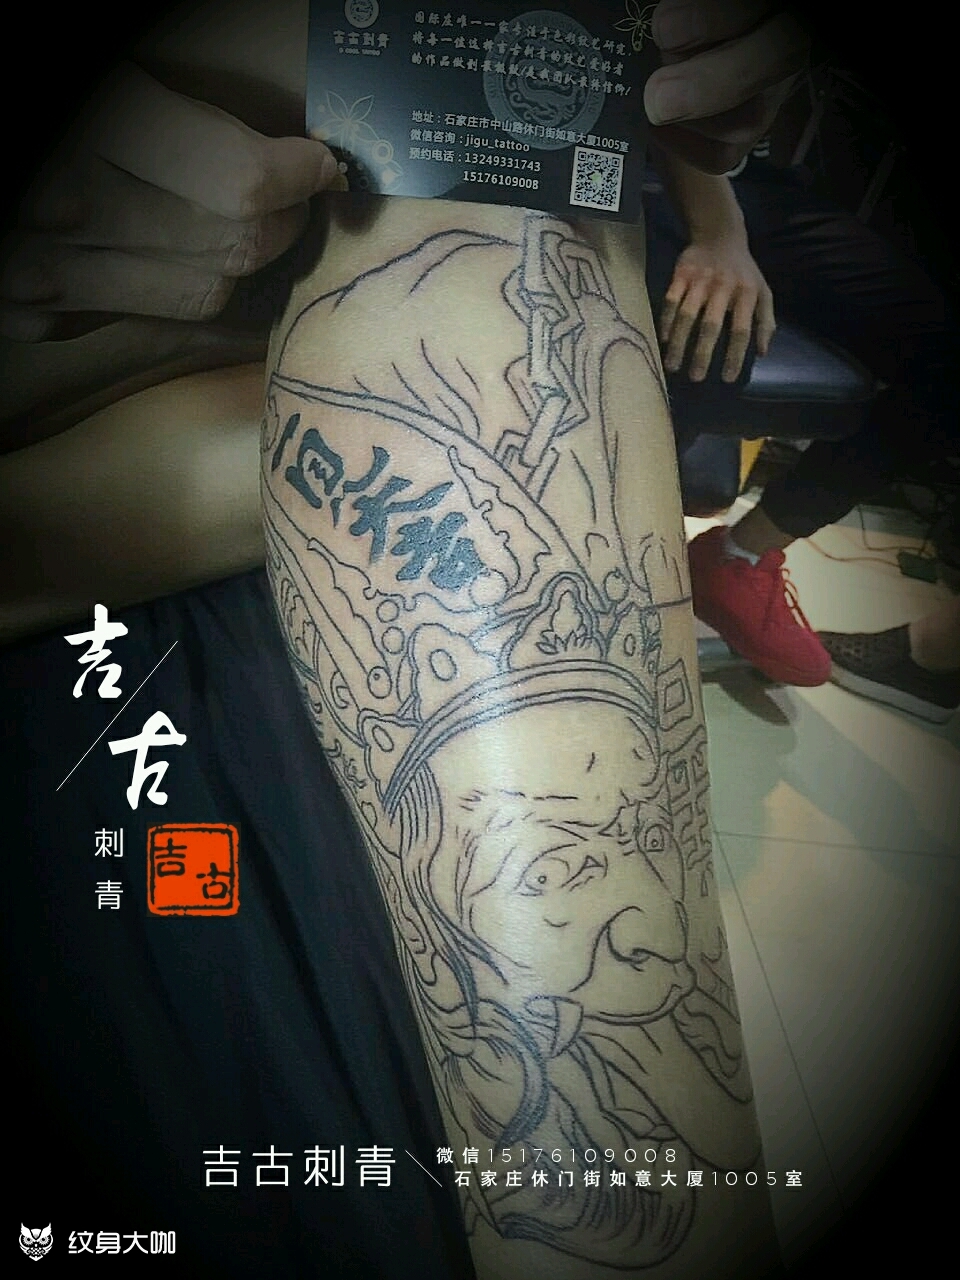 包腿白无常(未完成)_纹身图案手稿图片_林子的纹身作品集